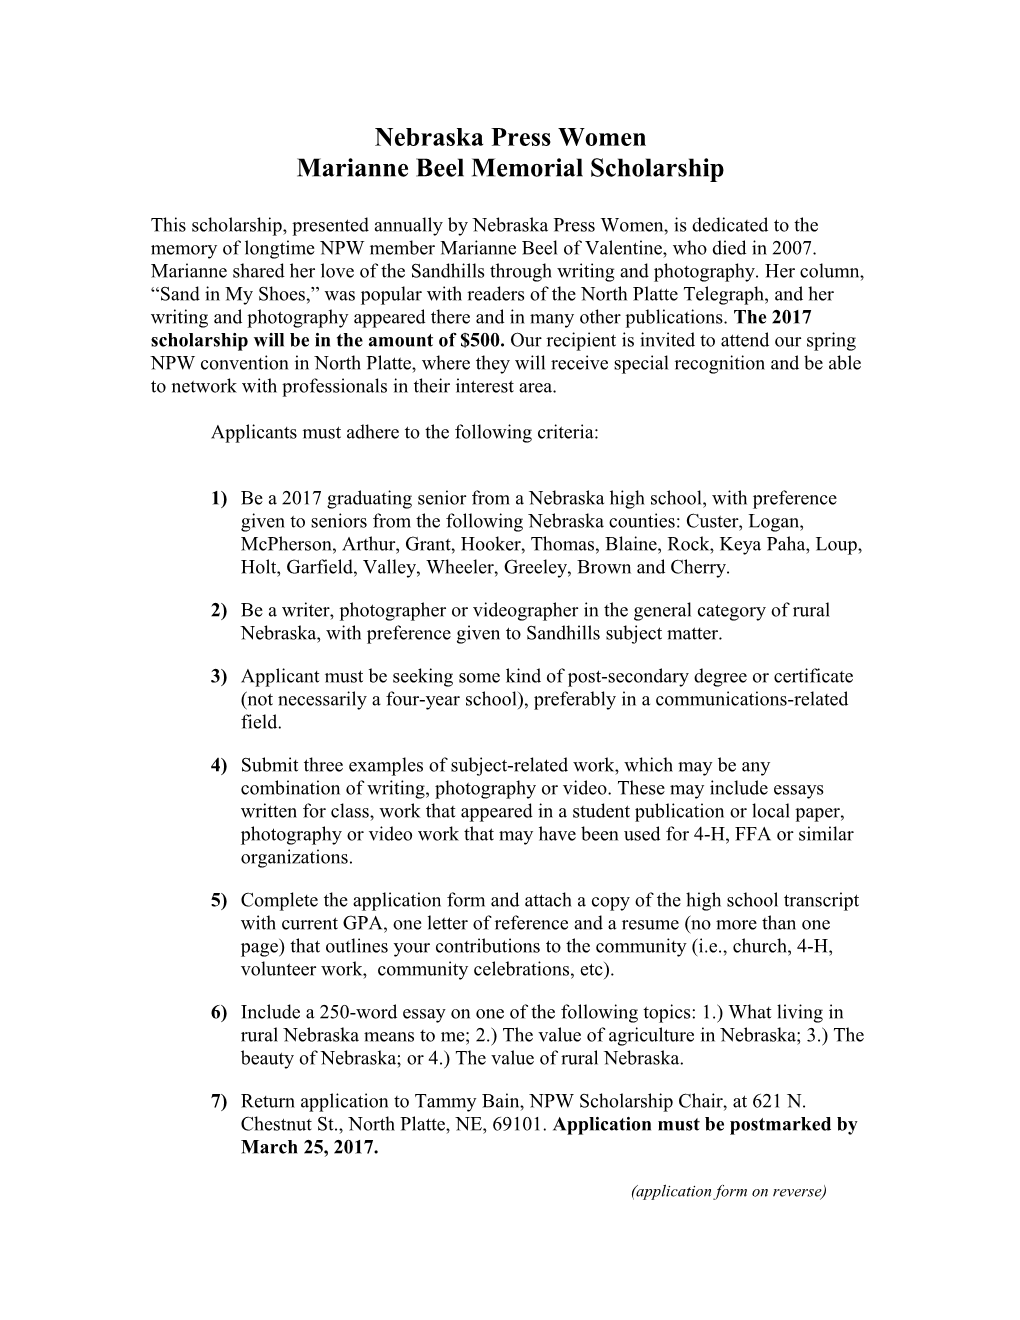 Marianne Beel Memorial Scholarship